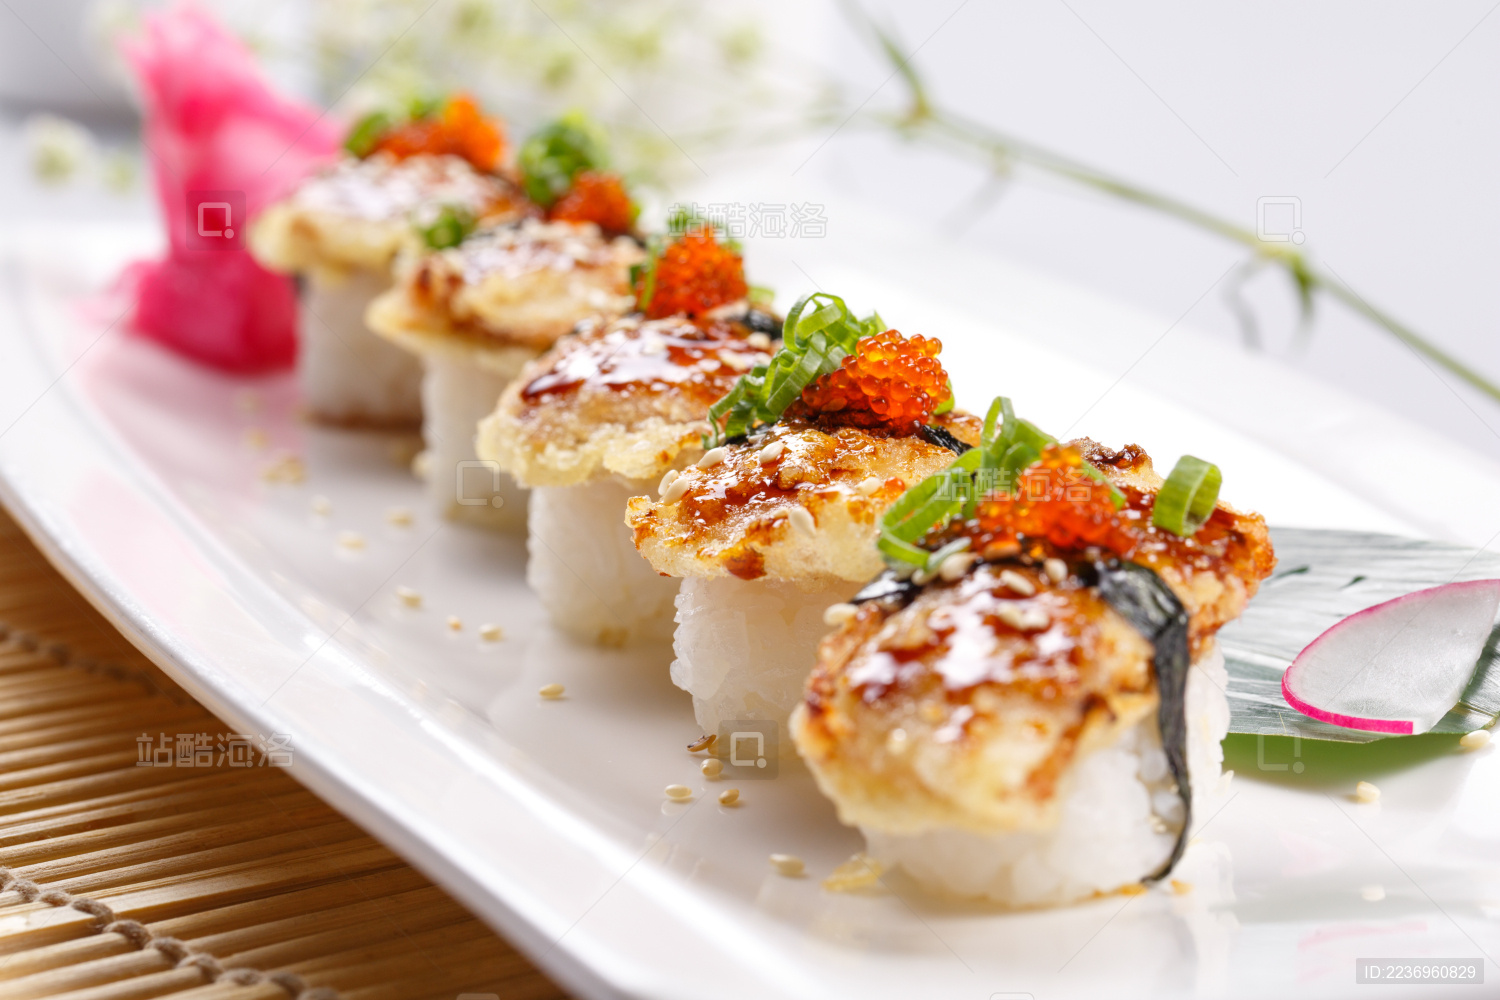 鳗鱼寿司做法【步骤图】_日本料理_寿司做法